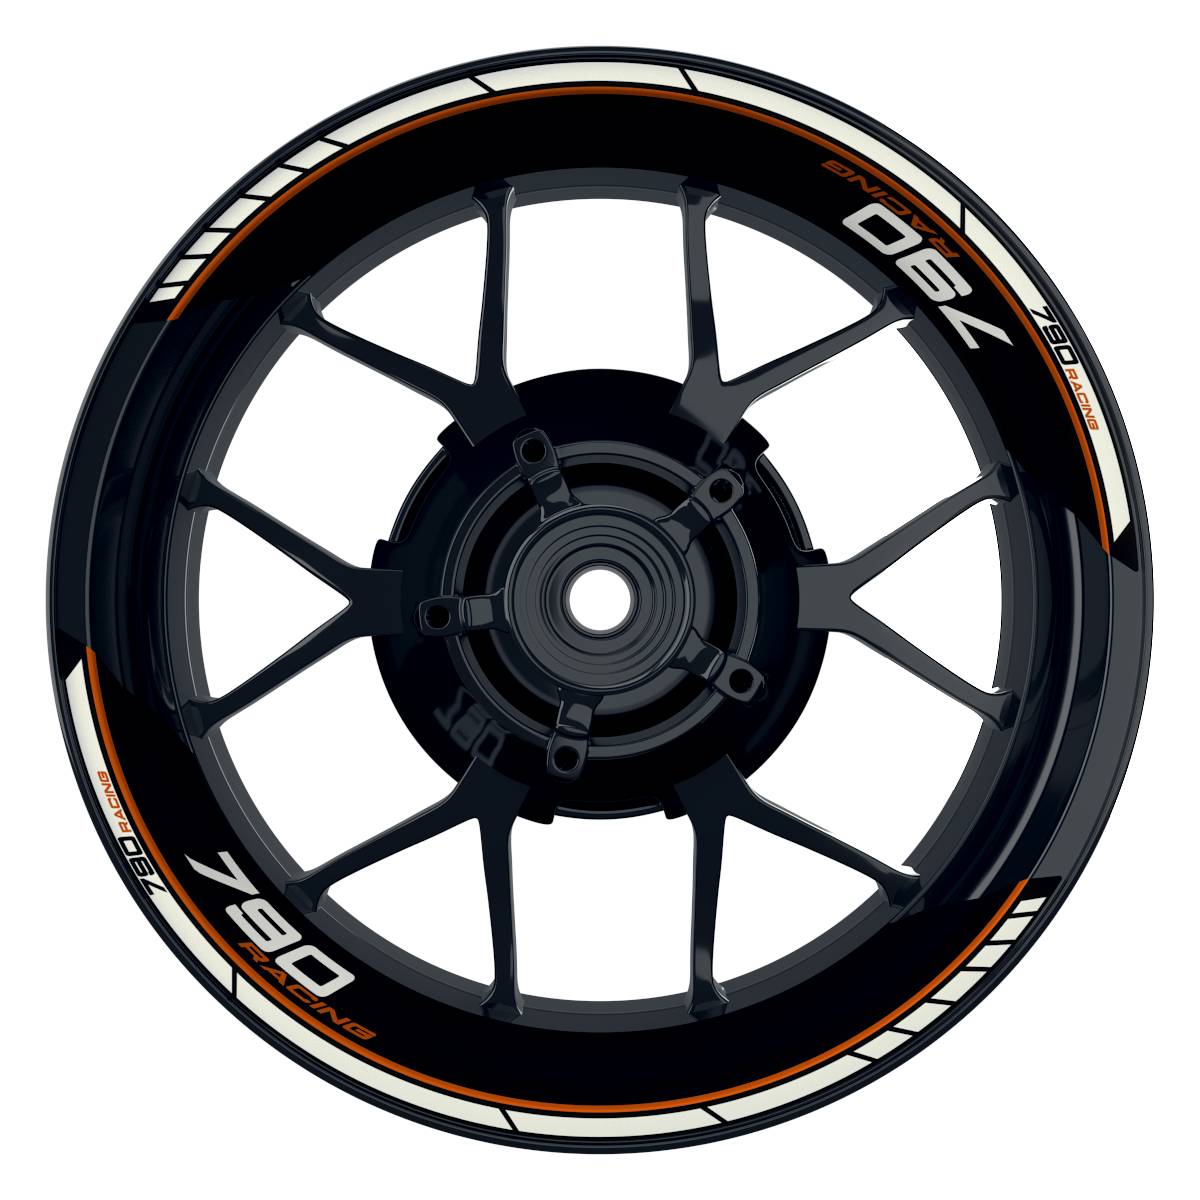 KTM Racing 790 Clean schwarz orange Frontansicht